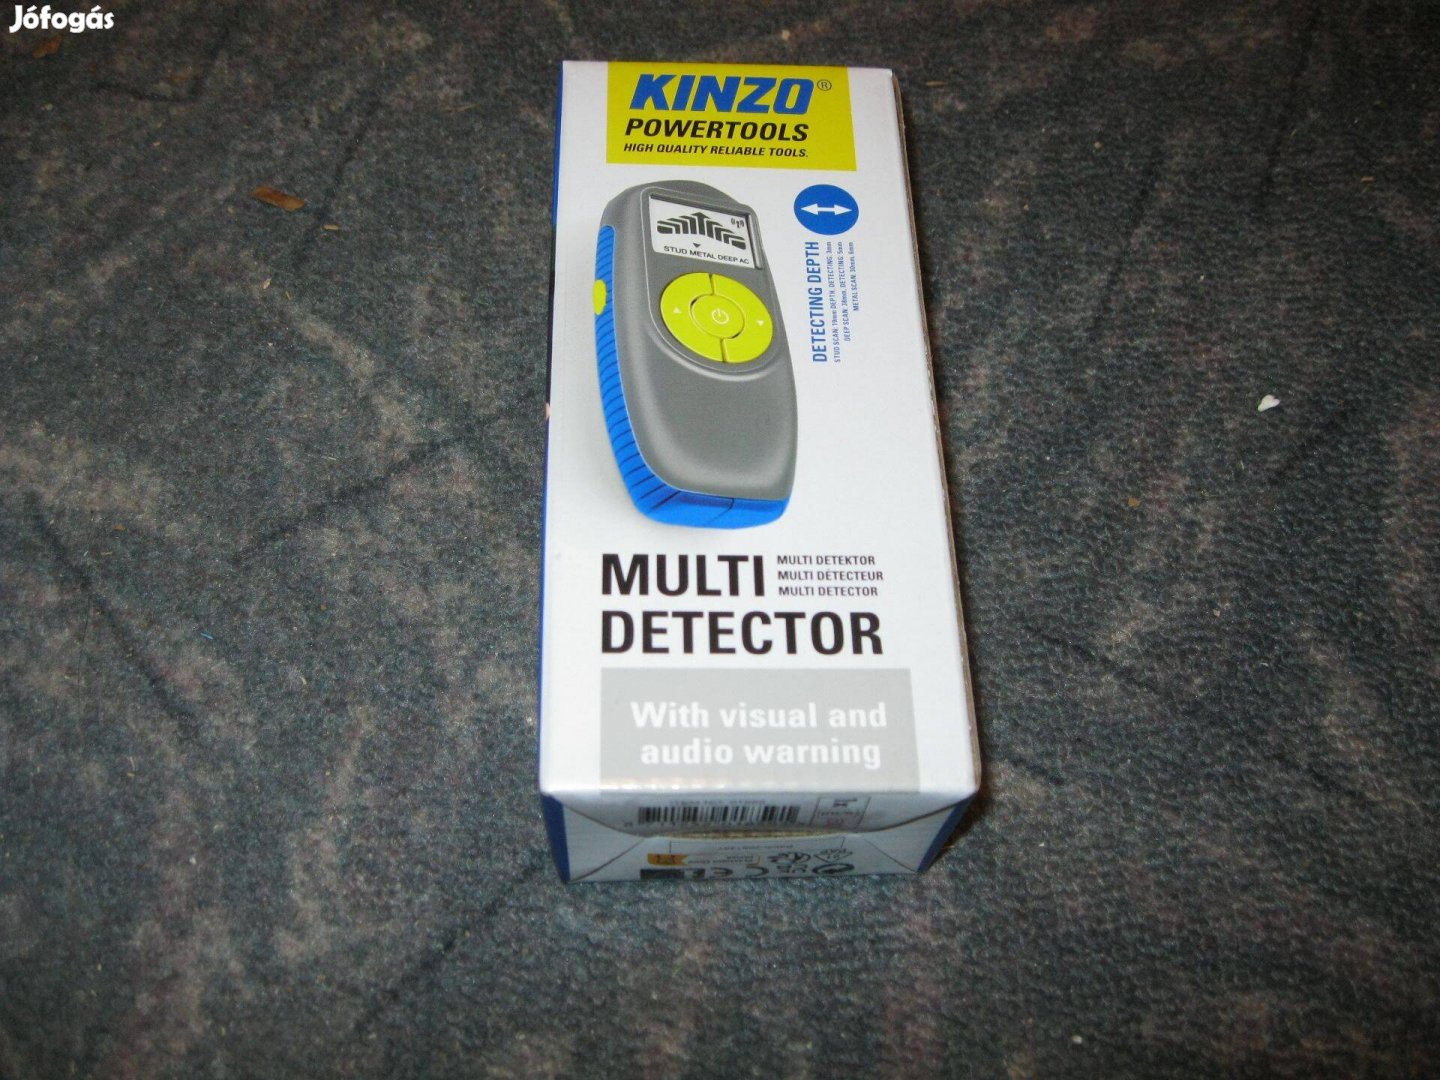 Kinzo multi detektor